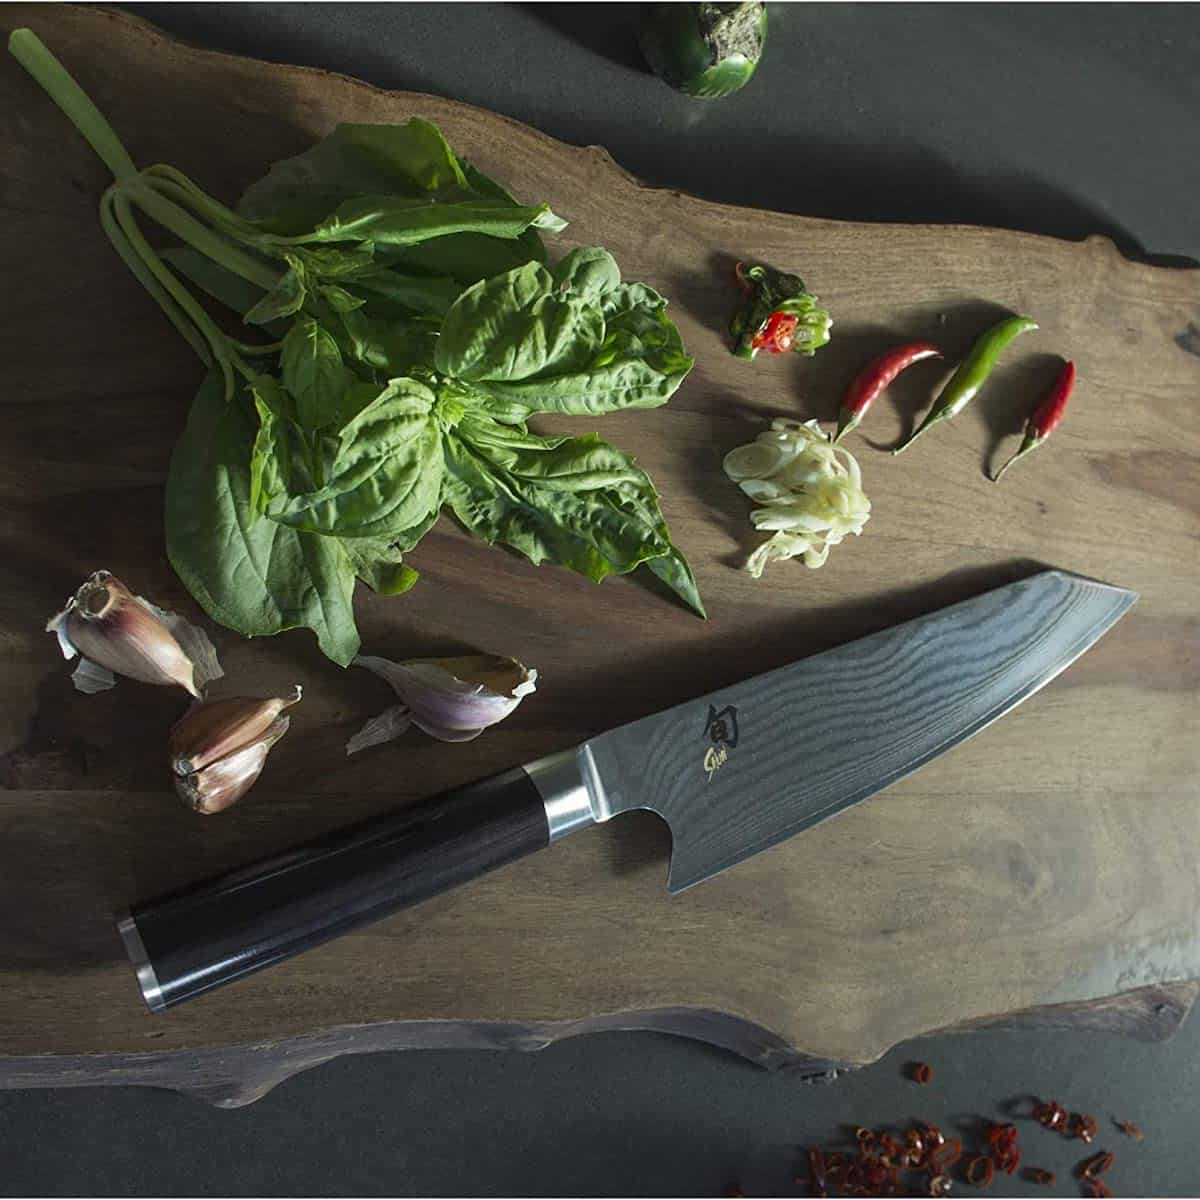 Best kiritsuke knife to buy Shun Master Chefs